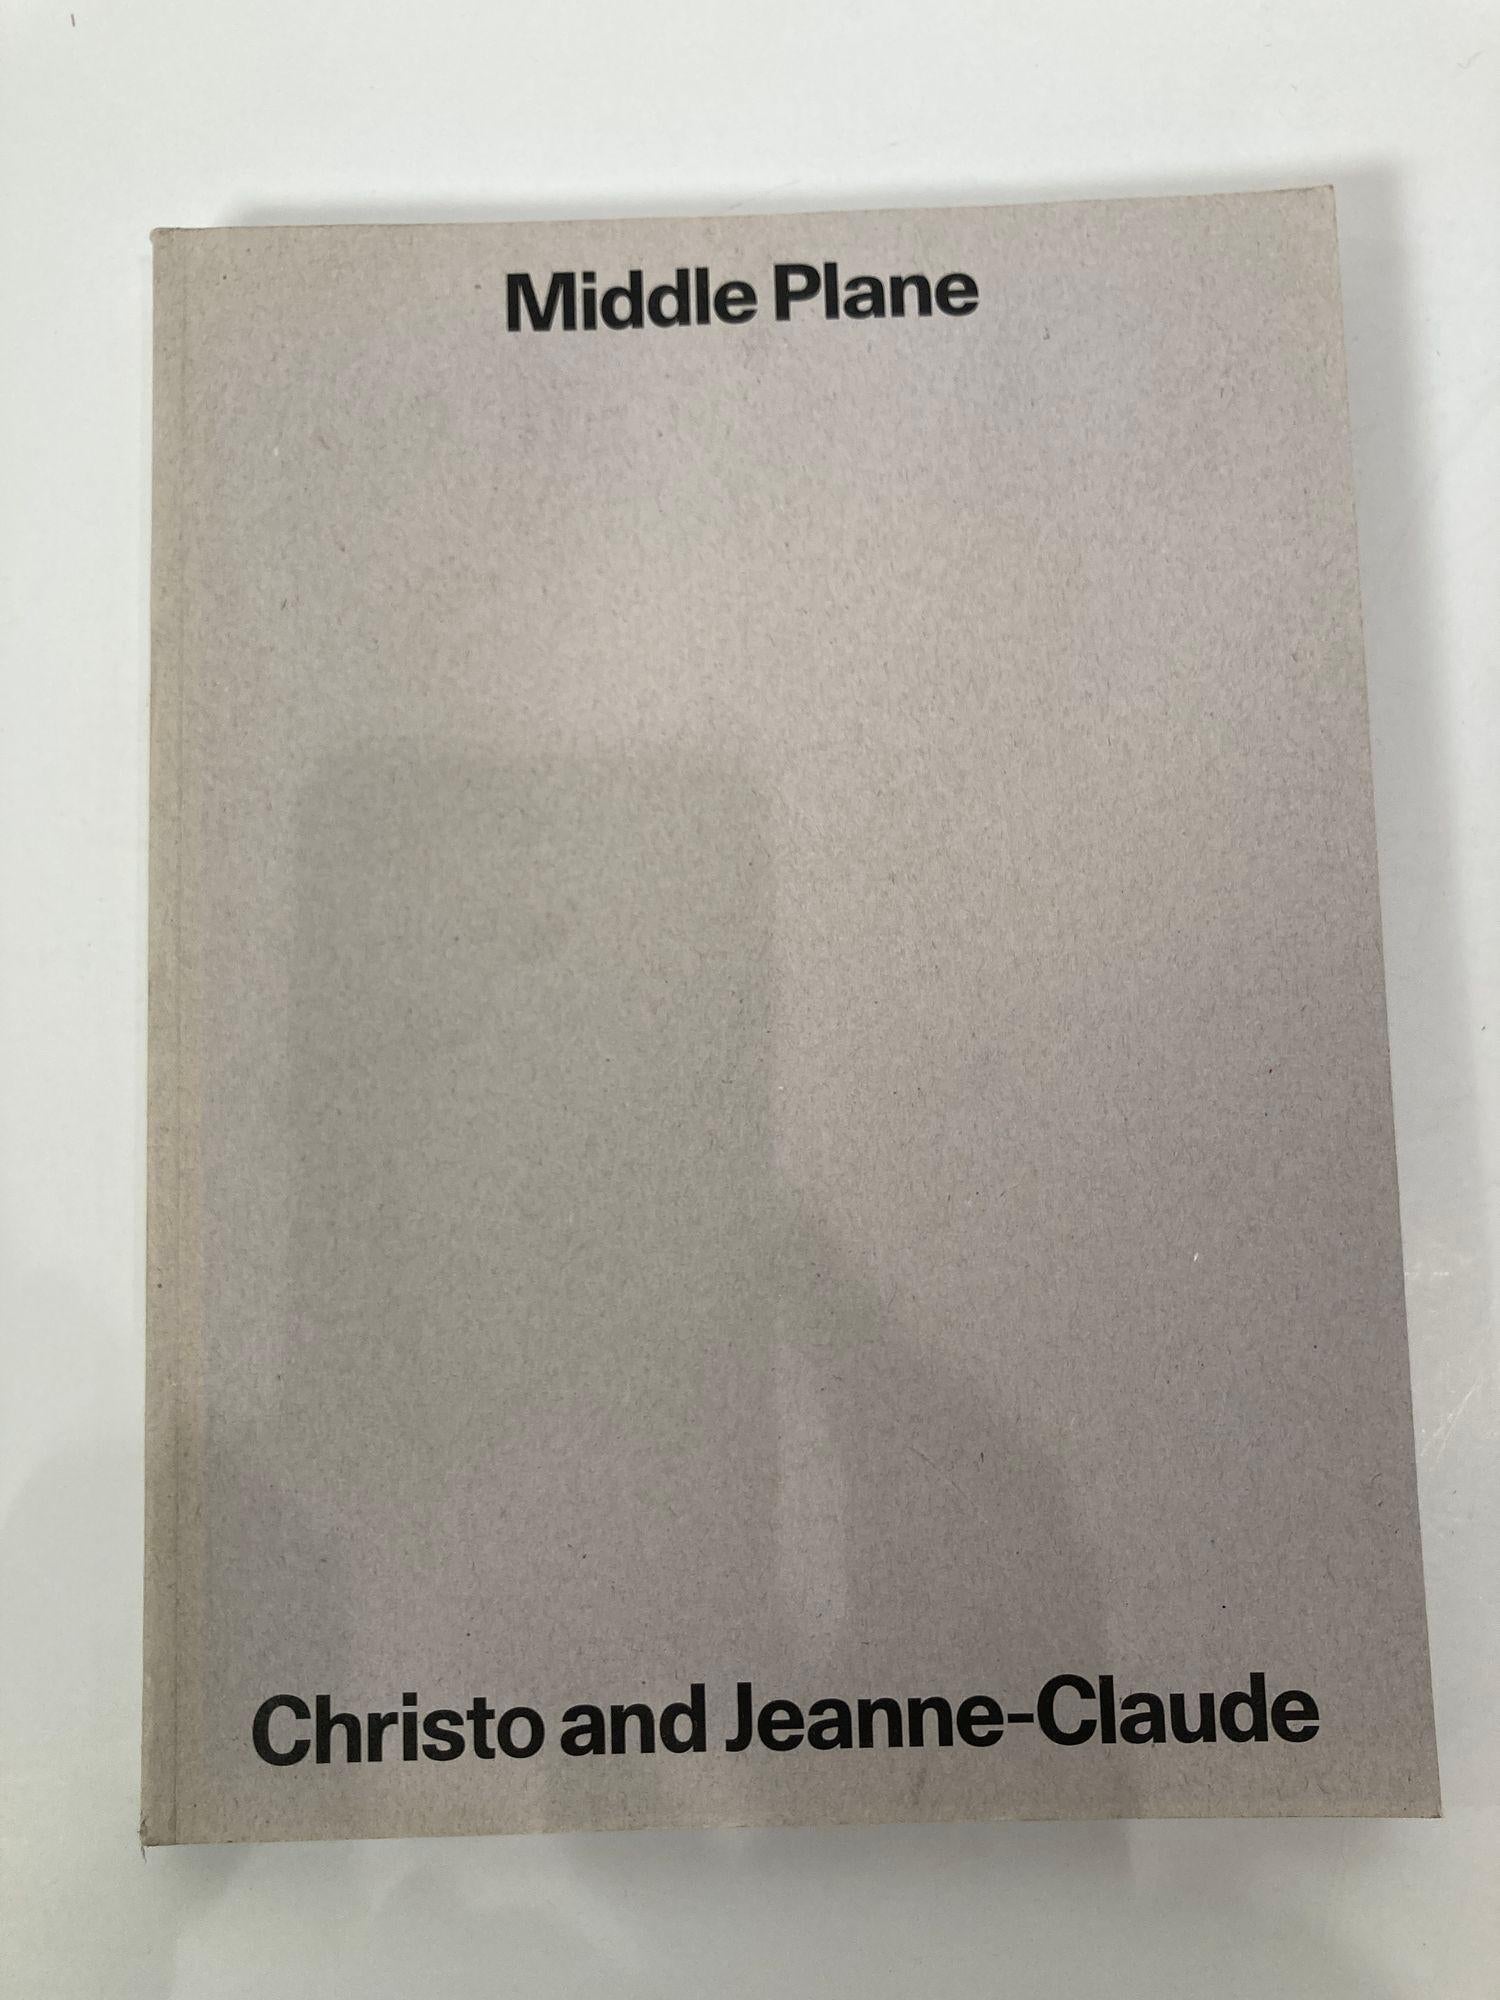 Middle Plane est un magazine d'art indépendant, publié deux fois par an à Londres. Chaque numéro est consacré à une figure de proue de l'art contemporain. En appliquant le langage visuel de la mode pour raconter une histoire d'une manière